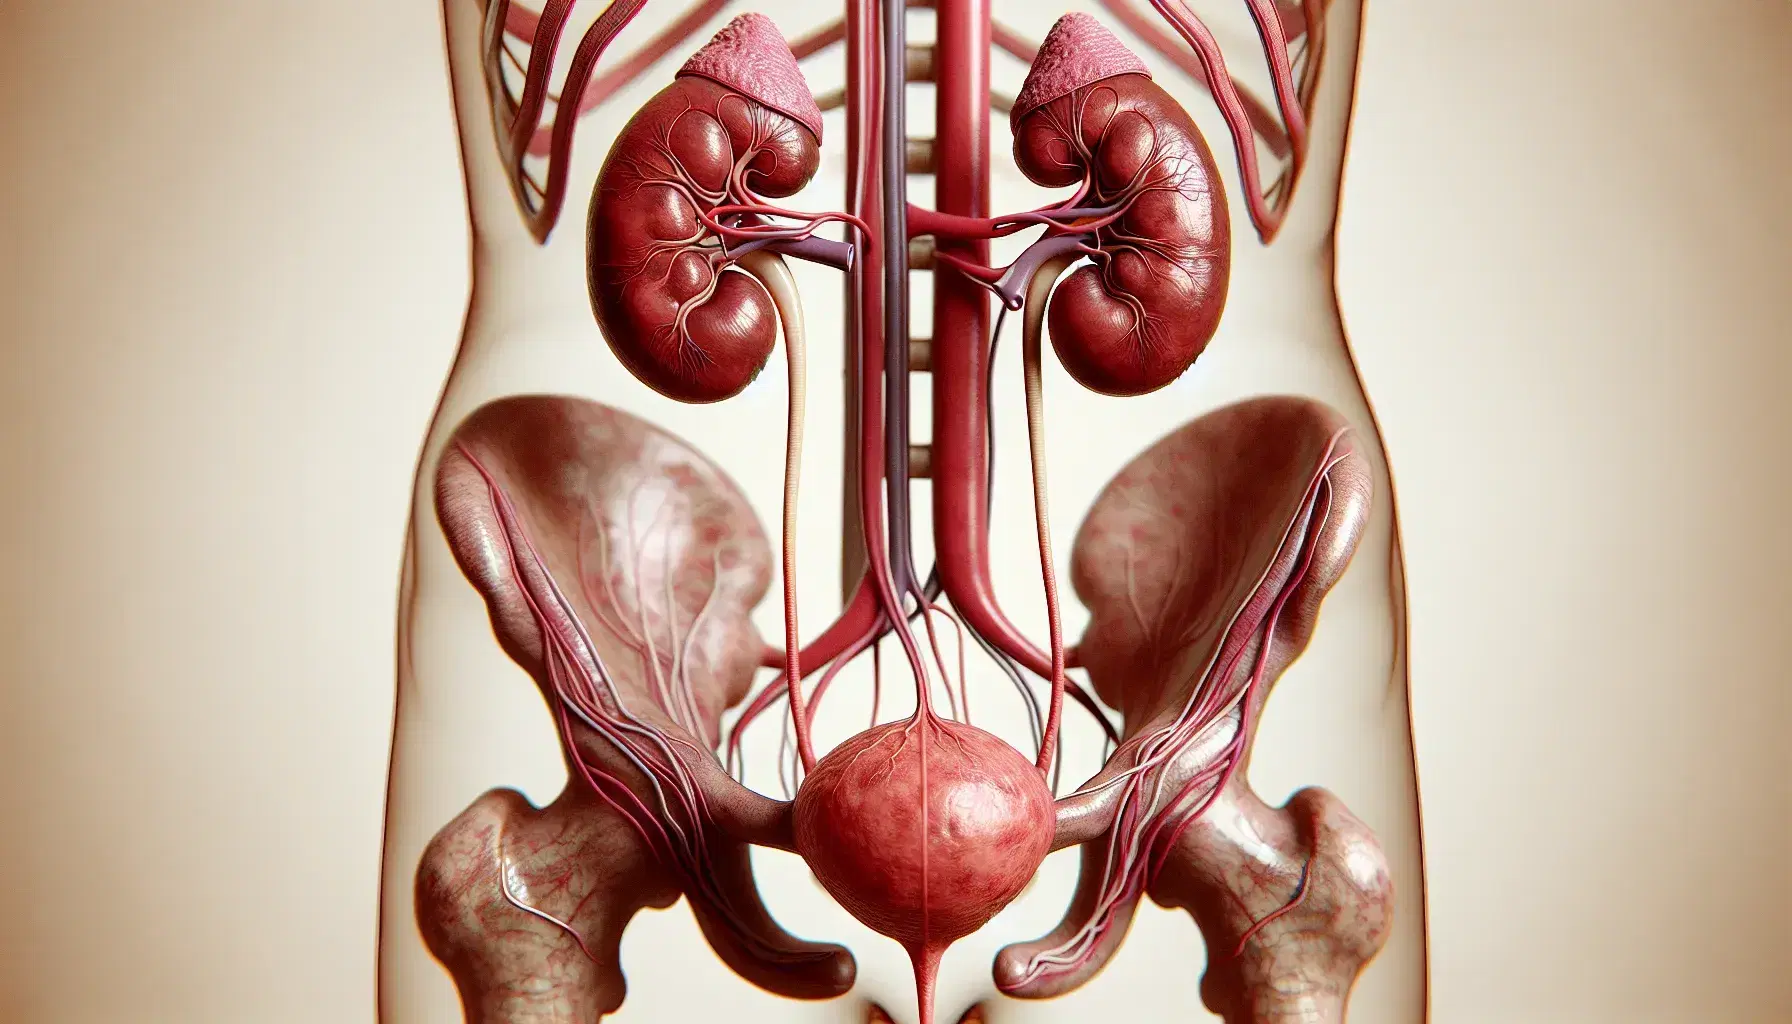 Sistema urinario humano con riñones rojizos, ureteres rosados, vejiga y uretra, en disposición anatómica realista y sin distracciones.